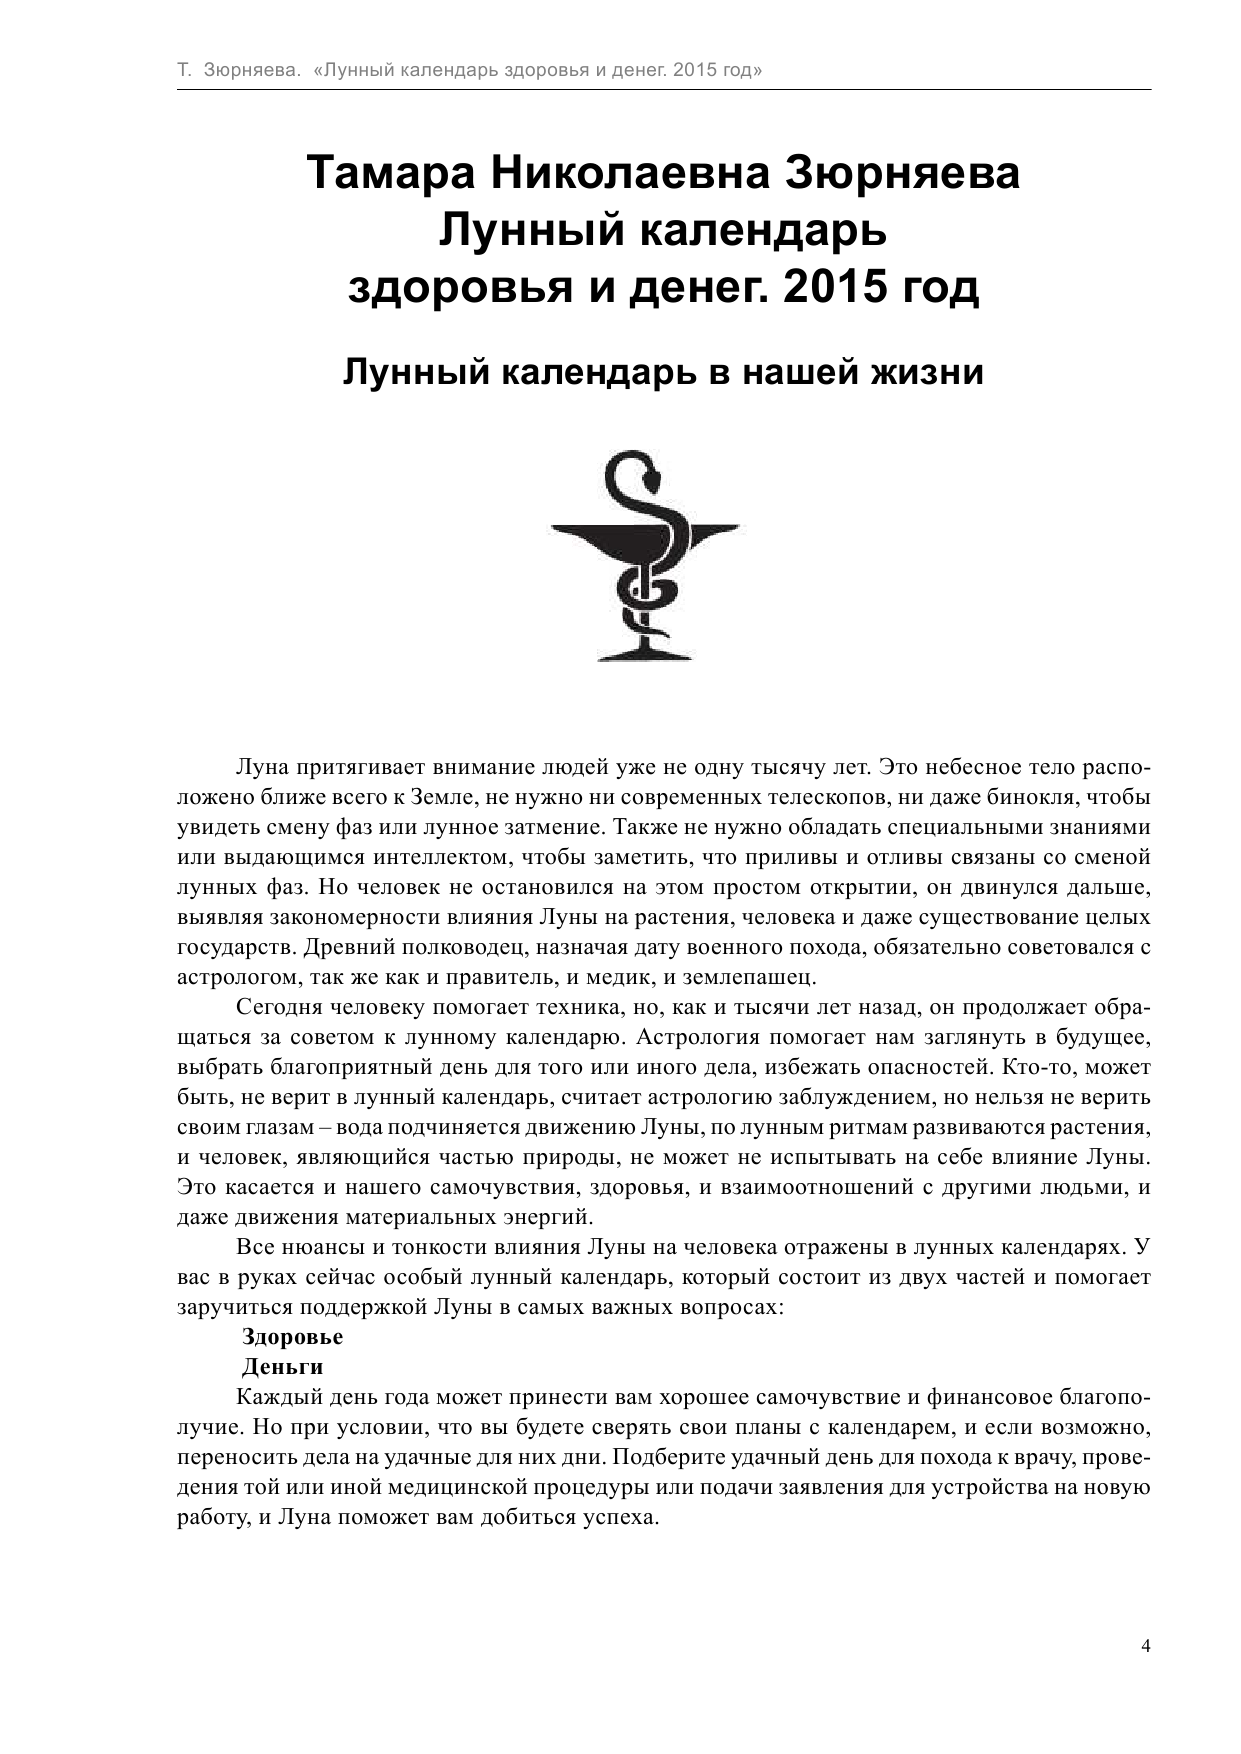 Зюрняева Тамара  Лунный календарь здоровья и денег. 2015 год - страница 4